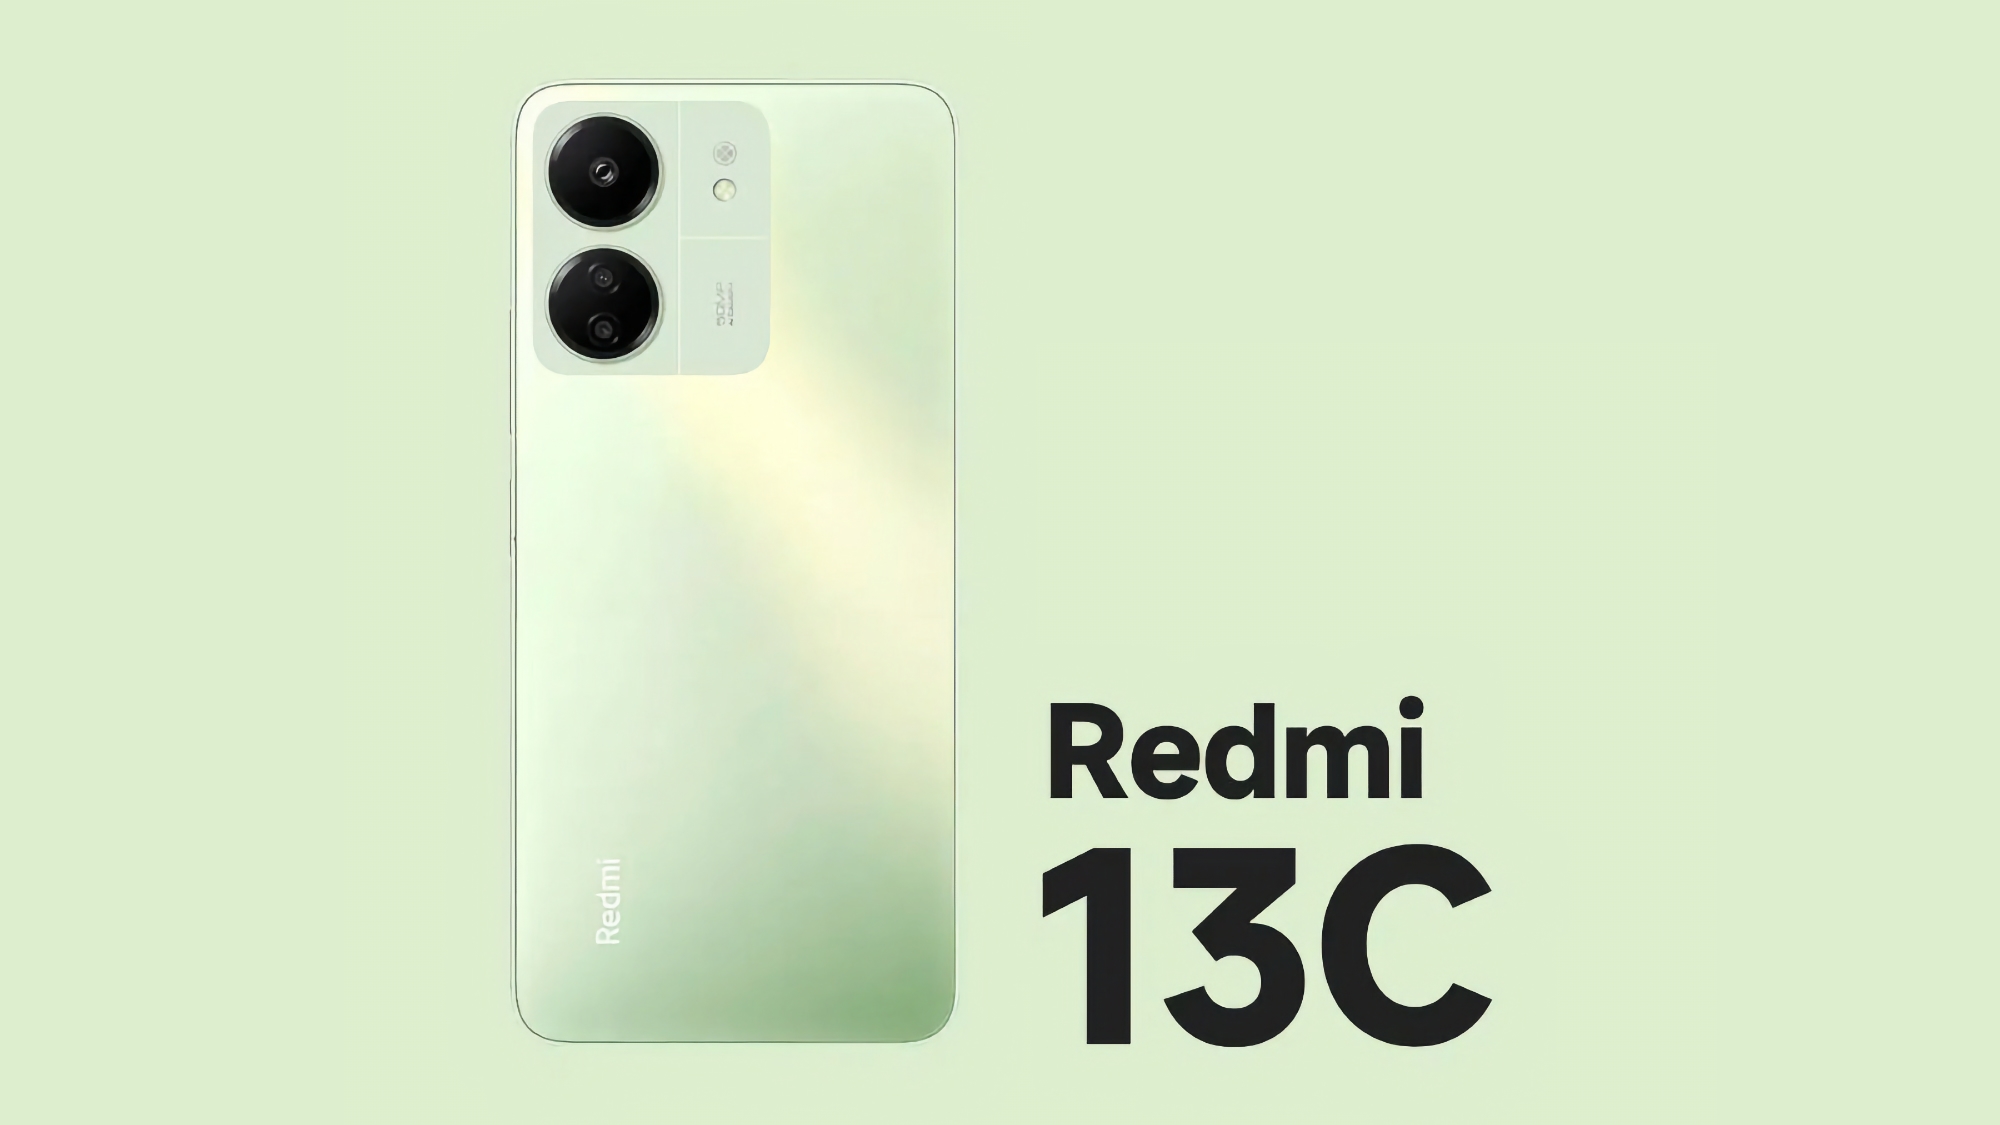 Aankondiging dichtbij: Xiaomi is begonnen met teaser van de budgetsmartphone Redmi 13C